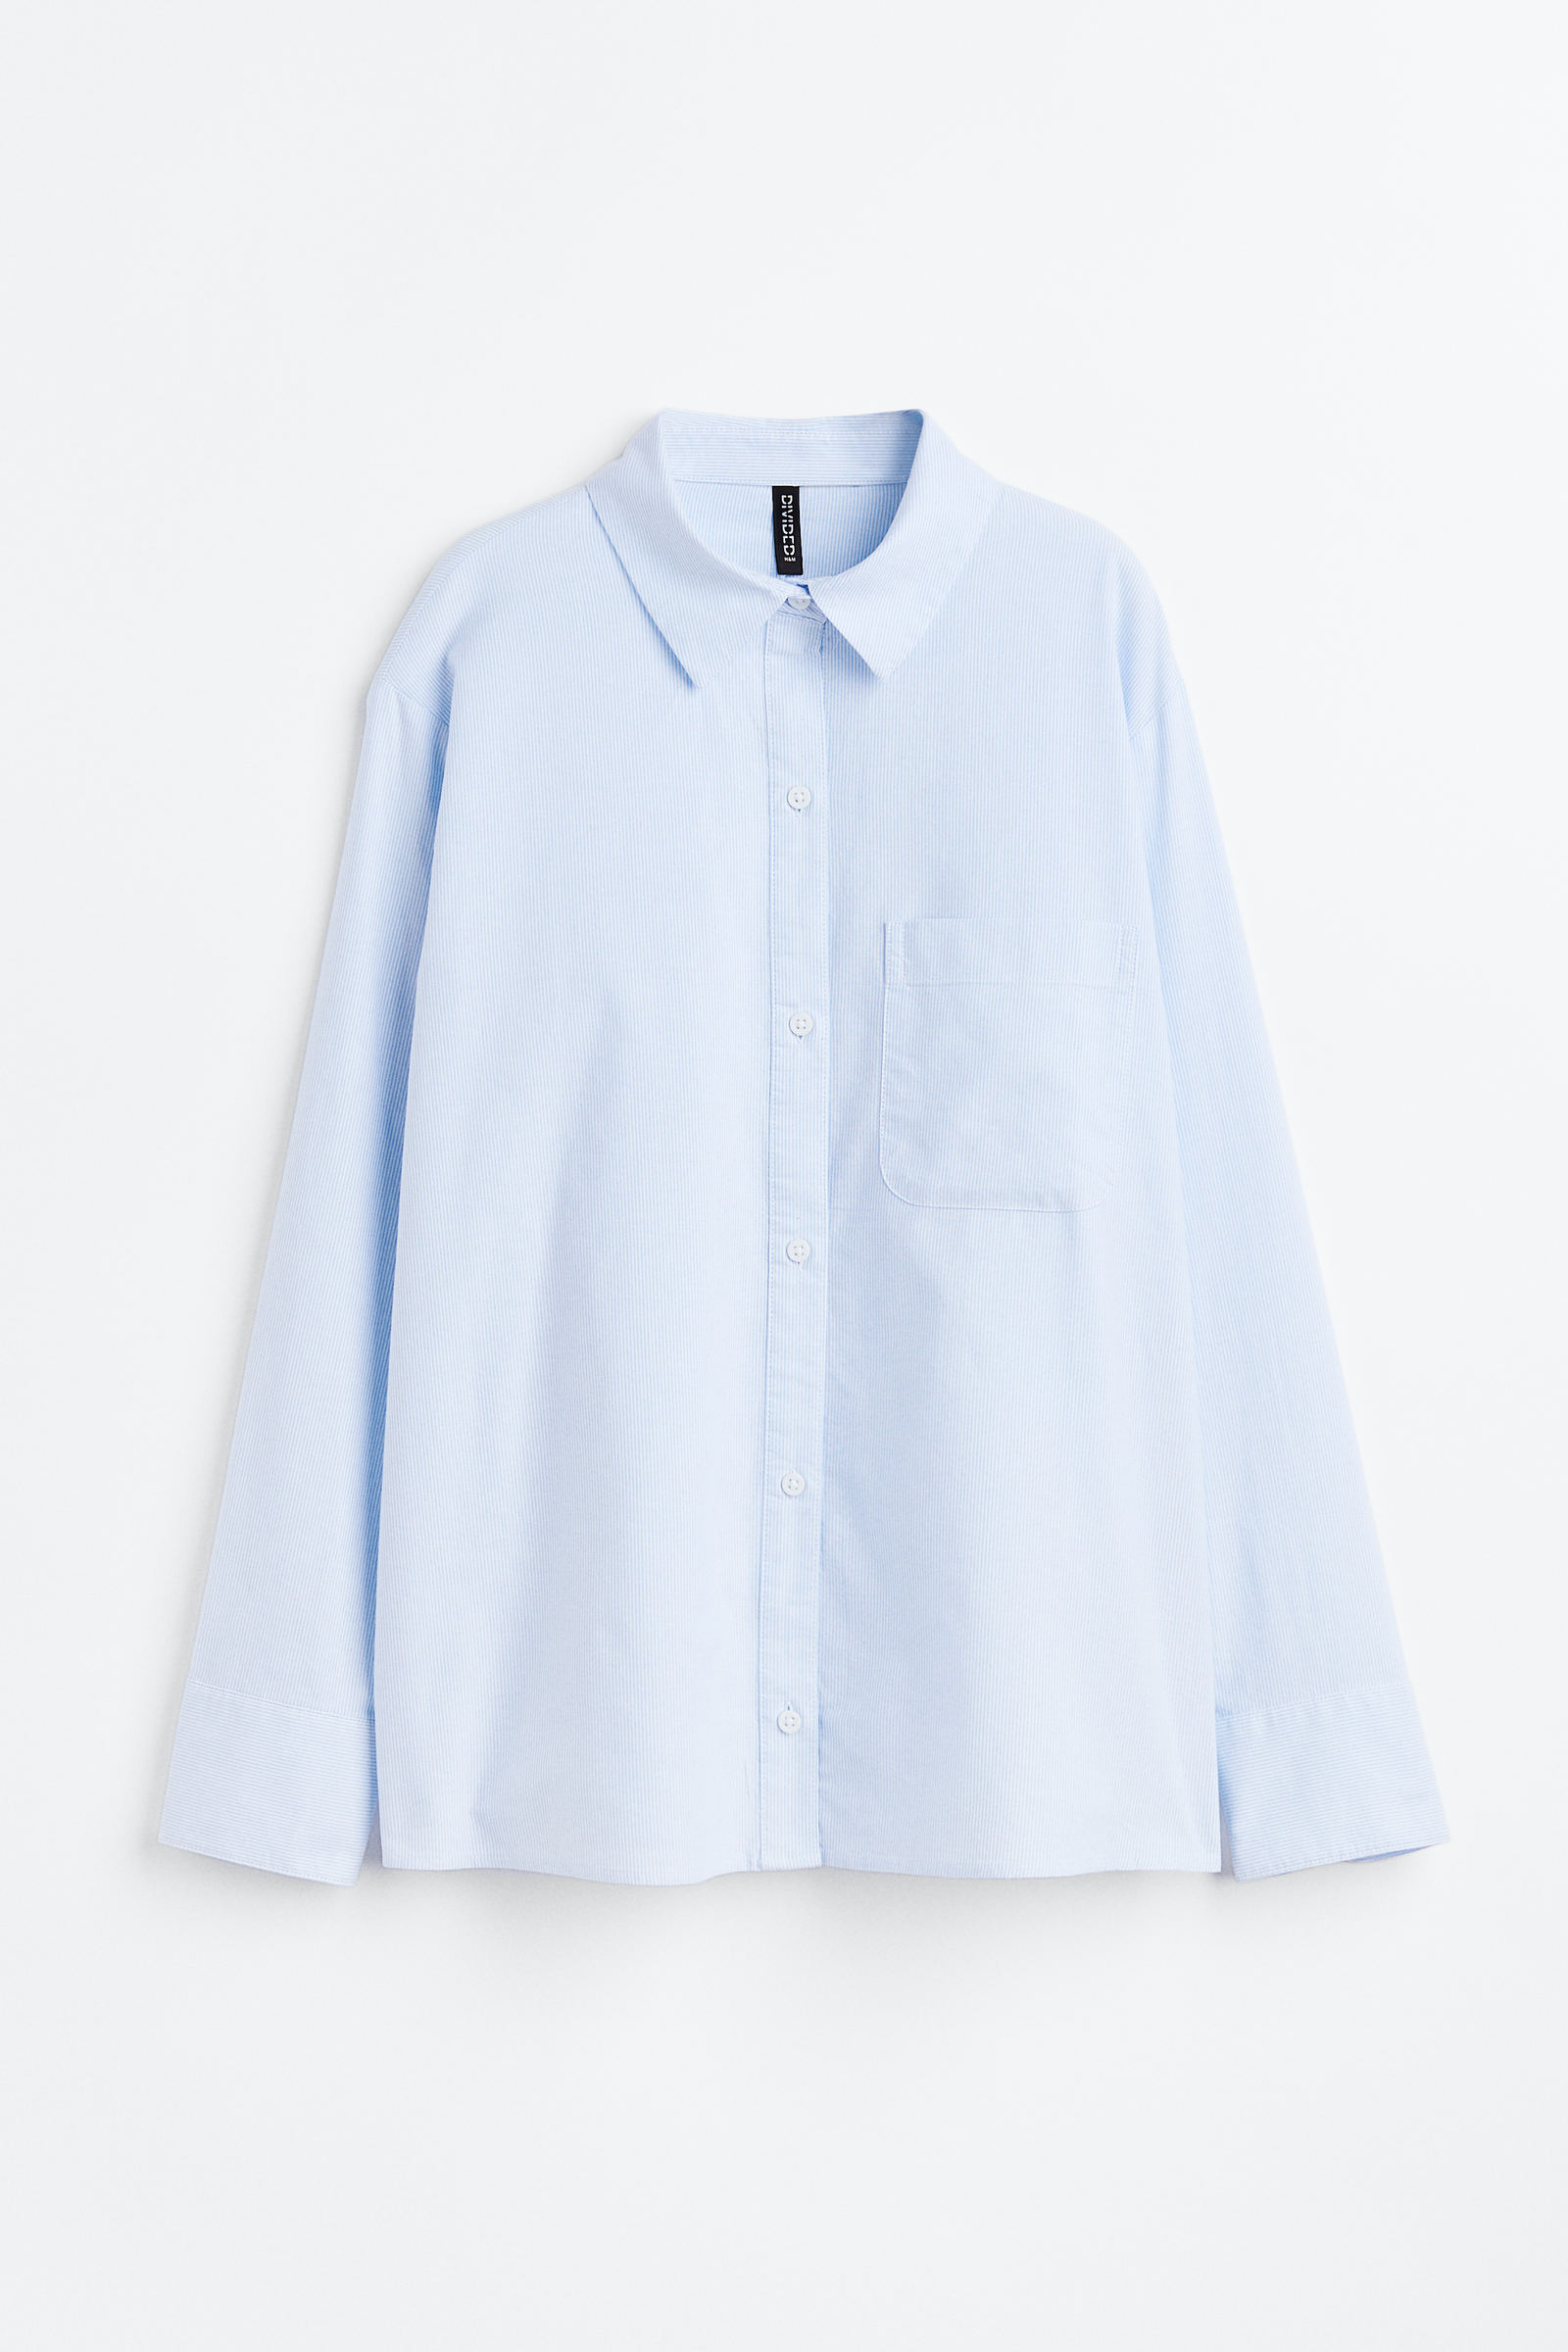 Blusas y camisas para mujer - H&M PE